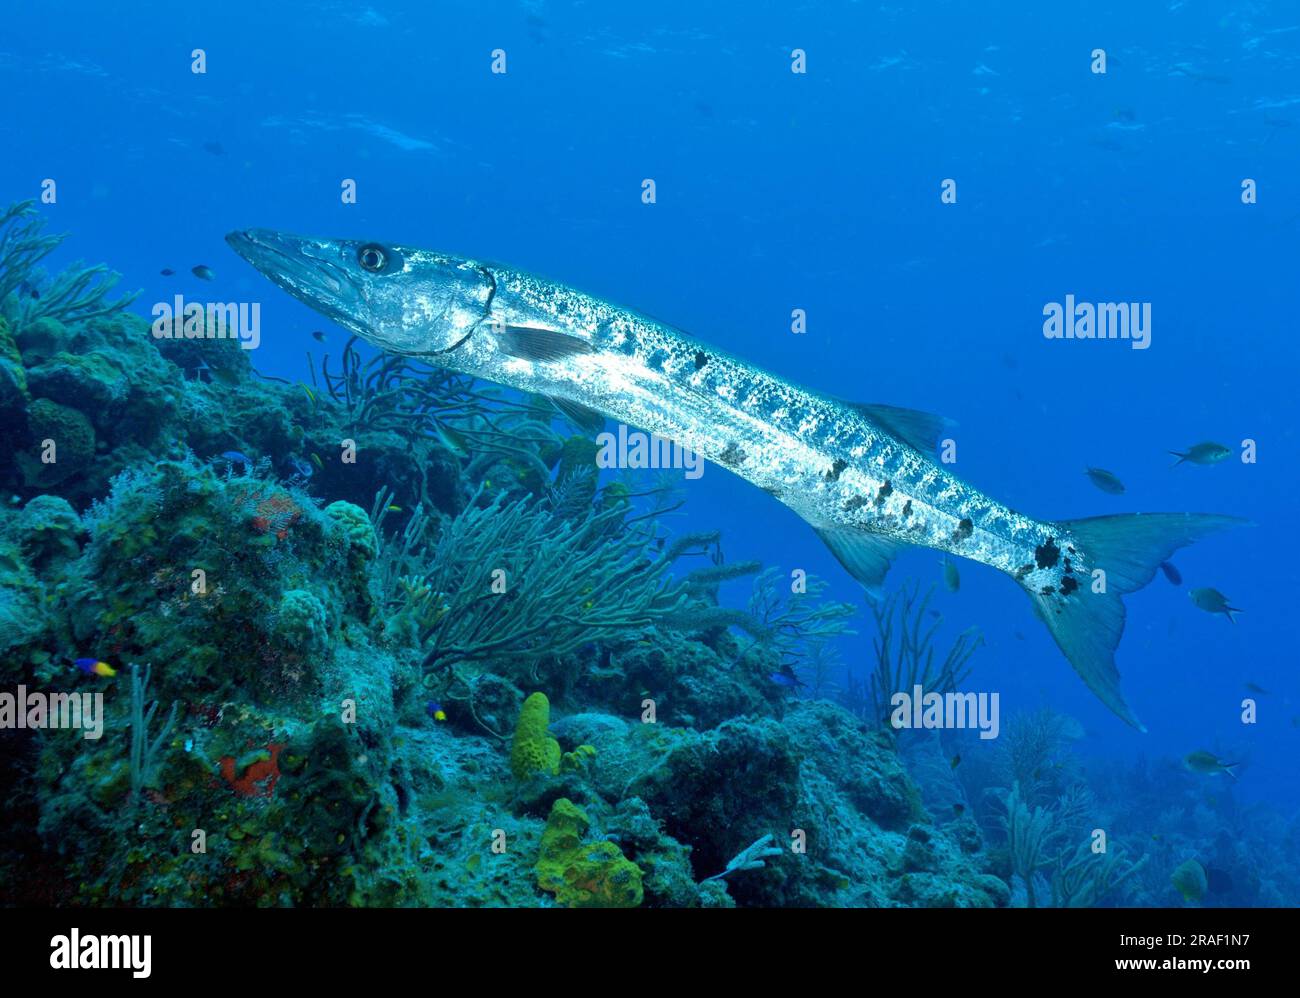 Barracuda (Sphyraena barracuda) in the caribbean, Maria La Gorda, Kuba, central america Stock Photo